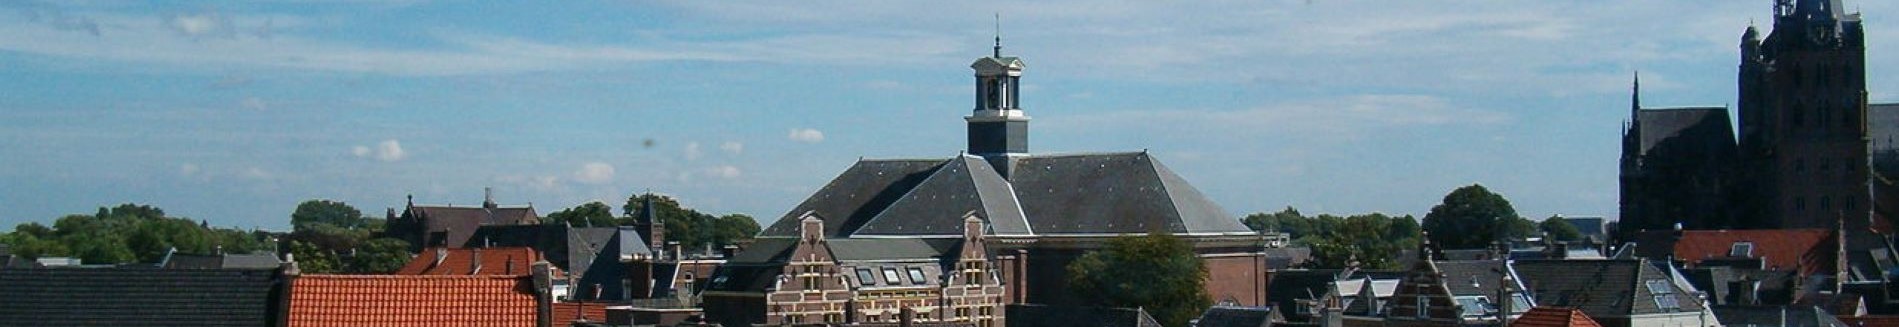 Hertogenbosch 